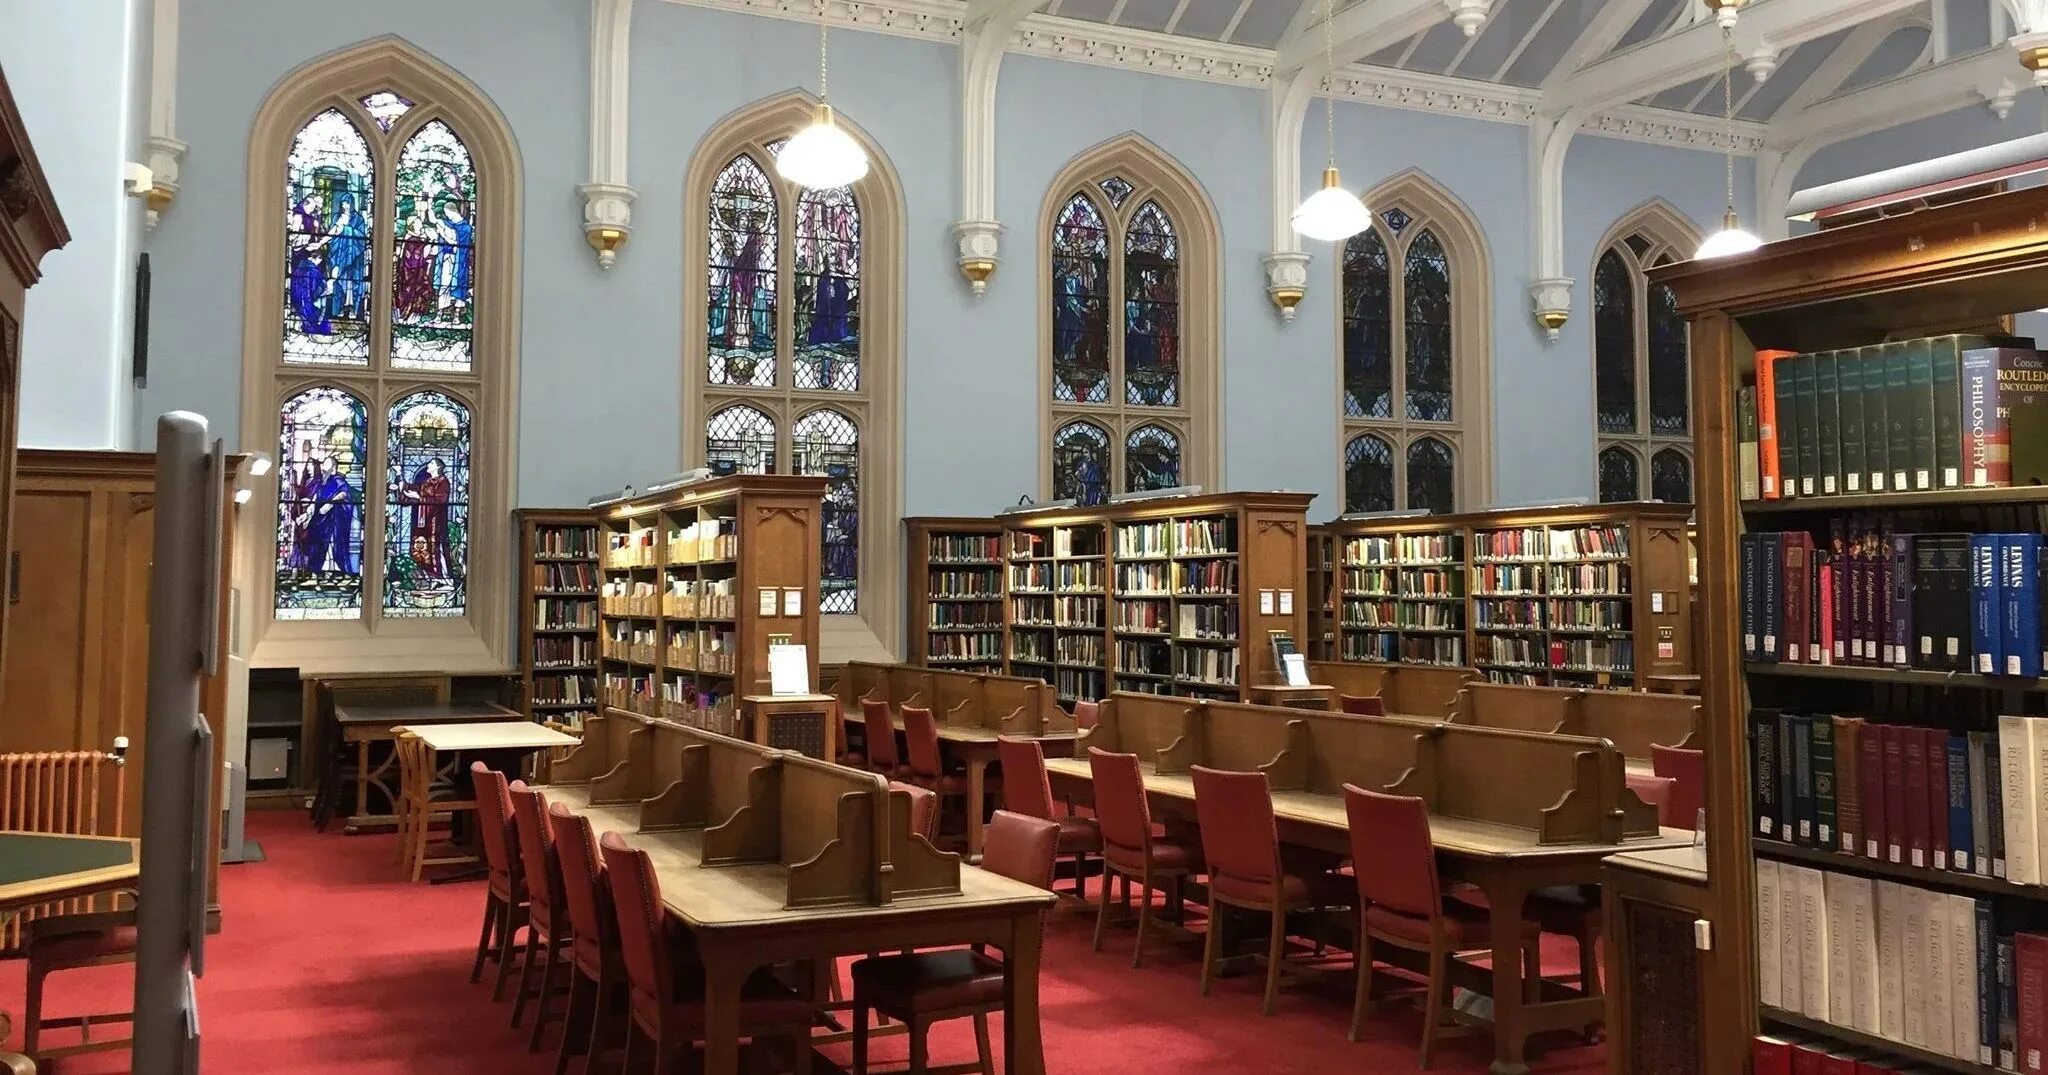 Сайты библиотек университетов. Стэнфордский университет библиотека. Эдинбургский университет. Эдинбургский университет внутри. Университет Глазго внутри.